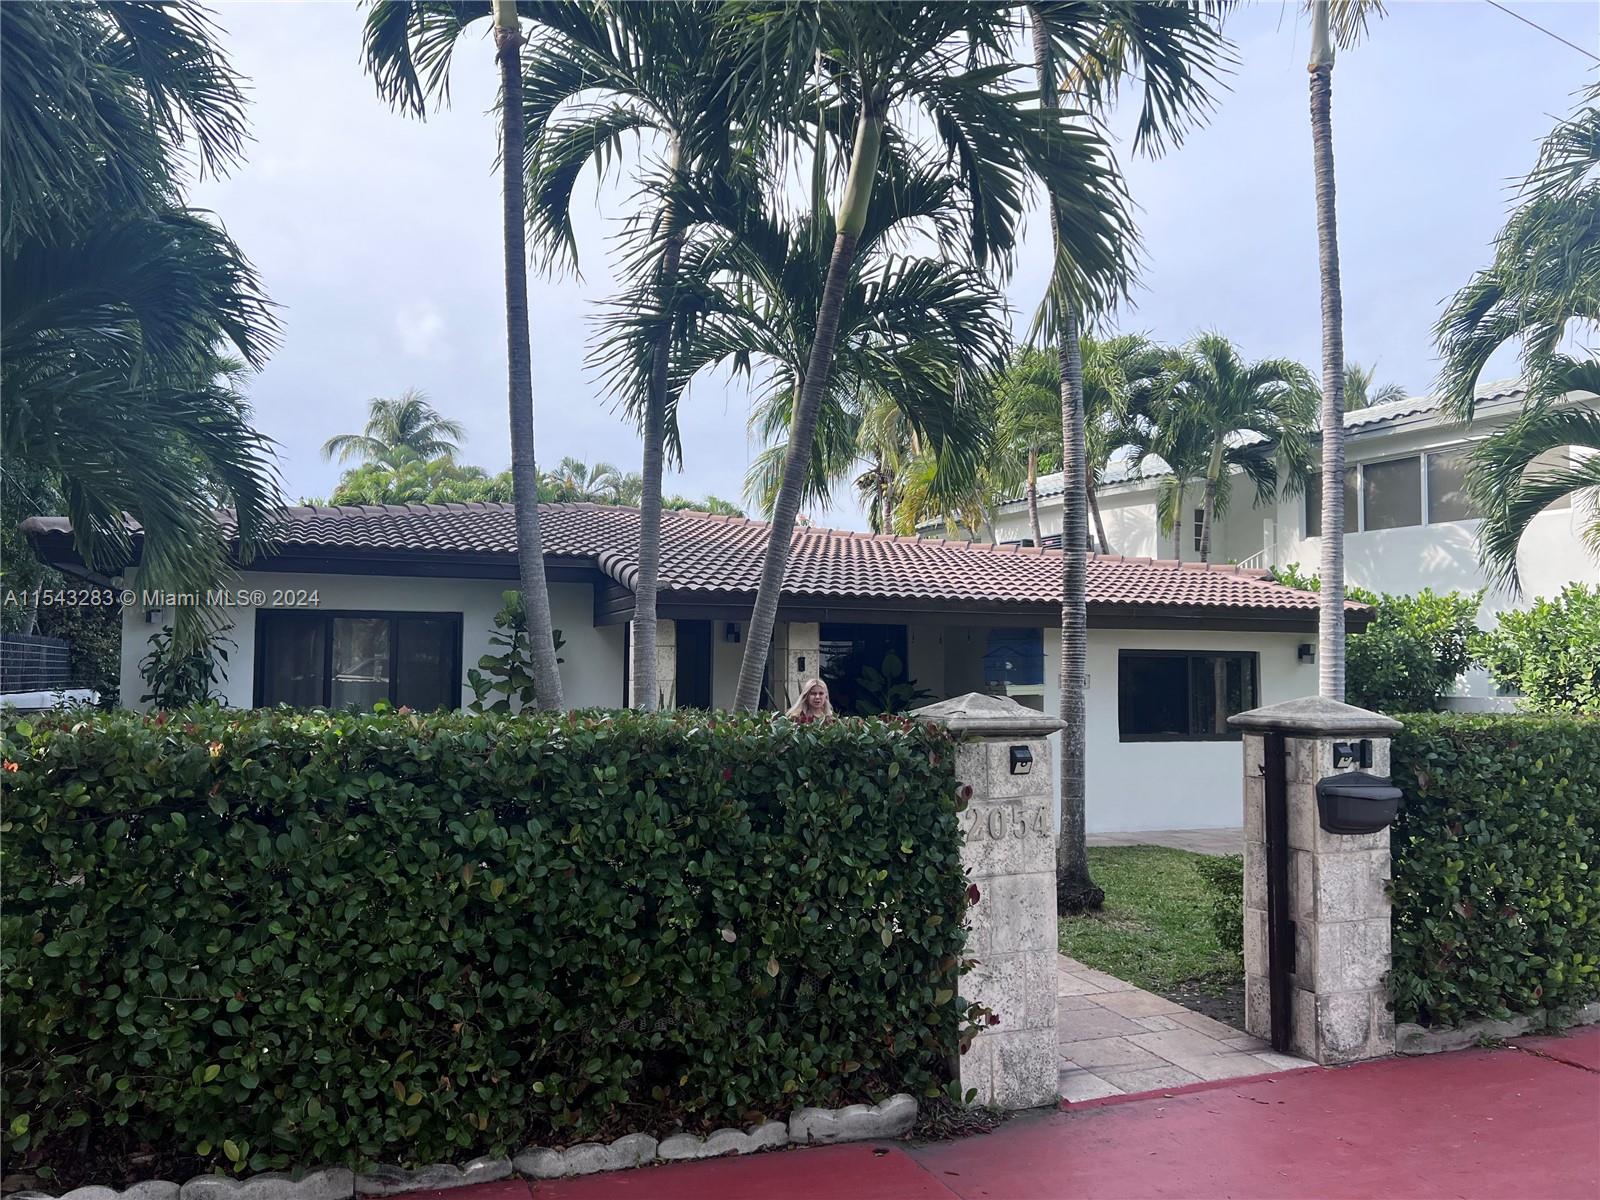 Property for Sale at 2054 Alton Rd Rd, Miami Beach, Miami-Dade County, Florida - Bedrooms: 4 
Bathrooms: 2  - $2,700,000